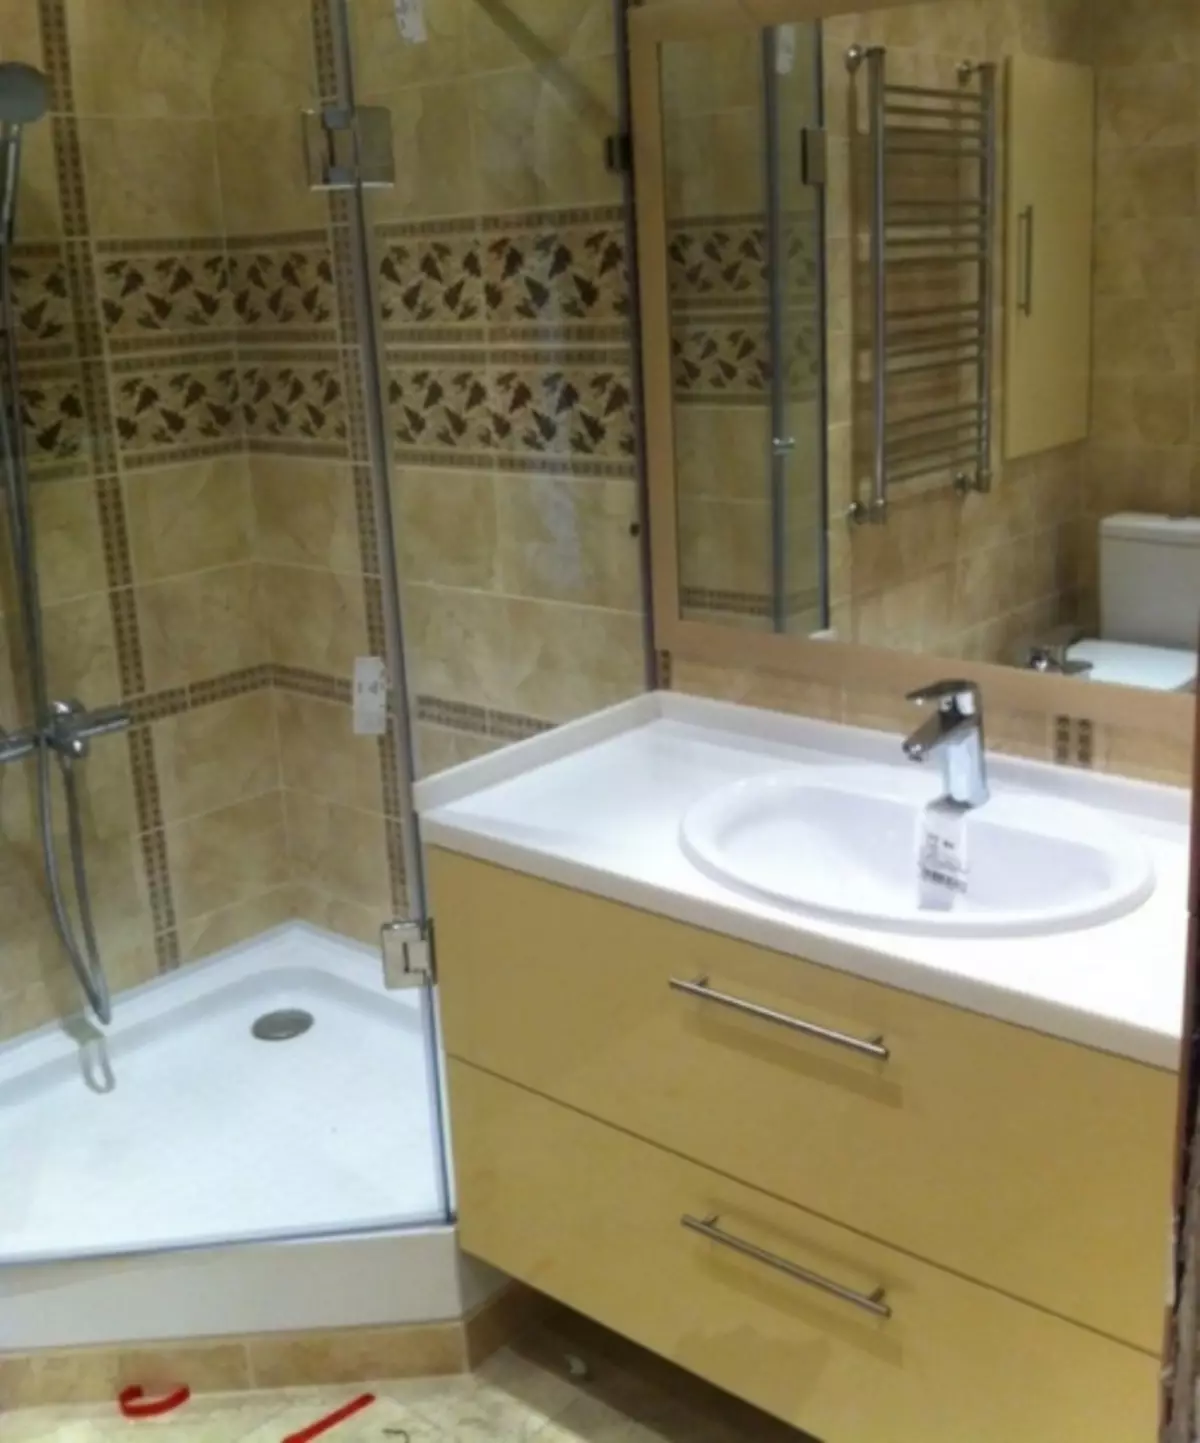 Cabinet avec évier de salle de bain - solution pratique et élégante